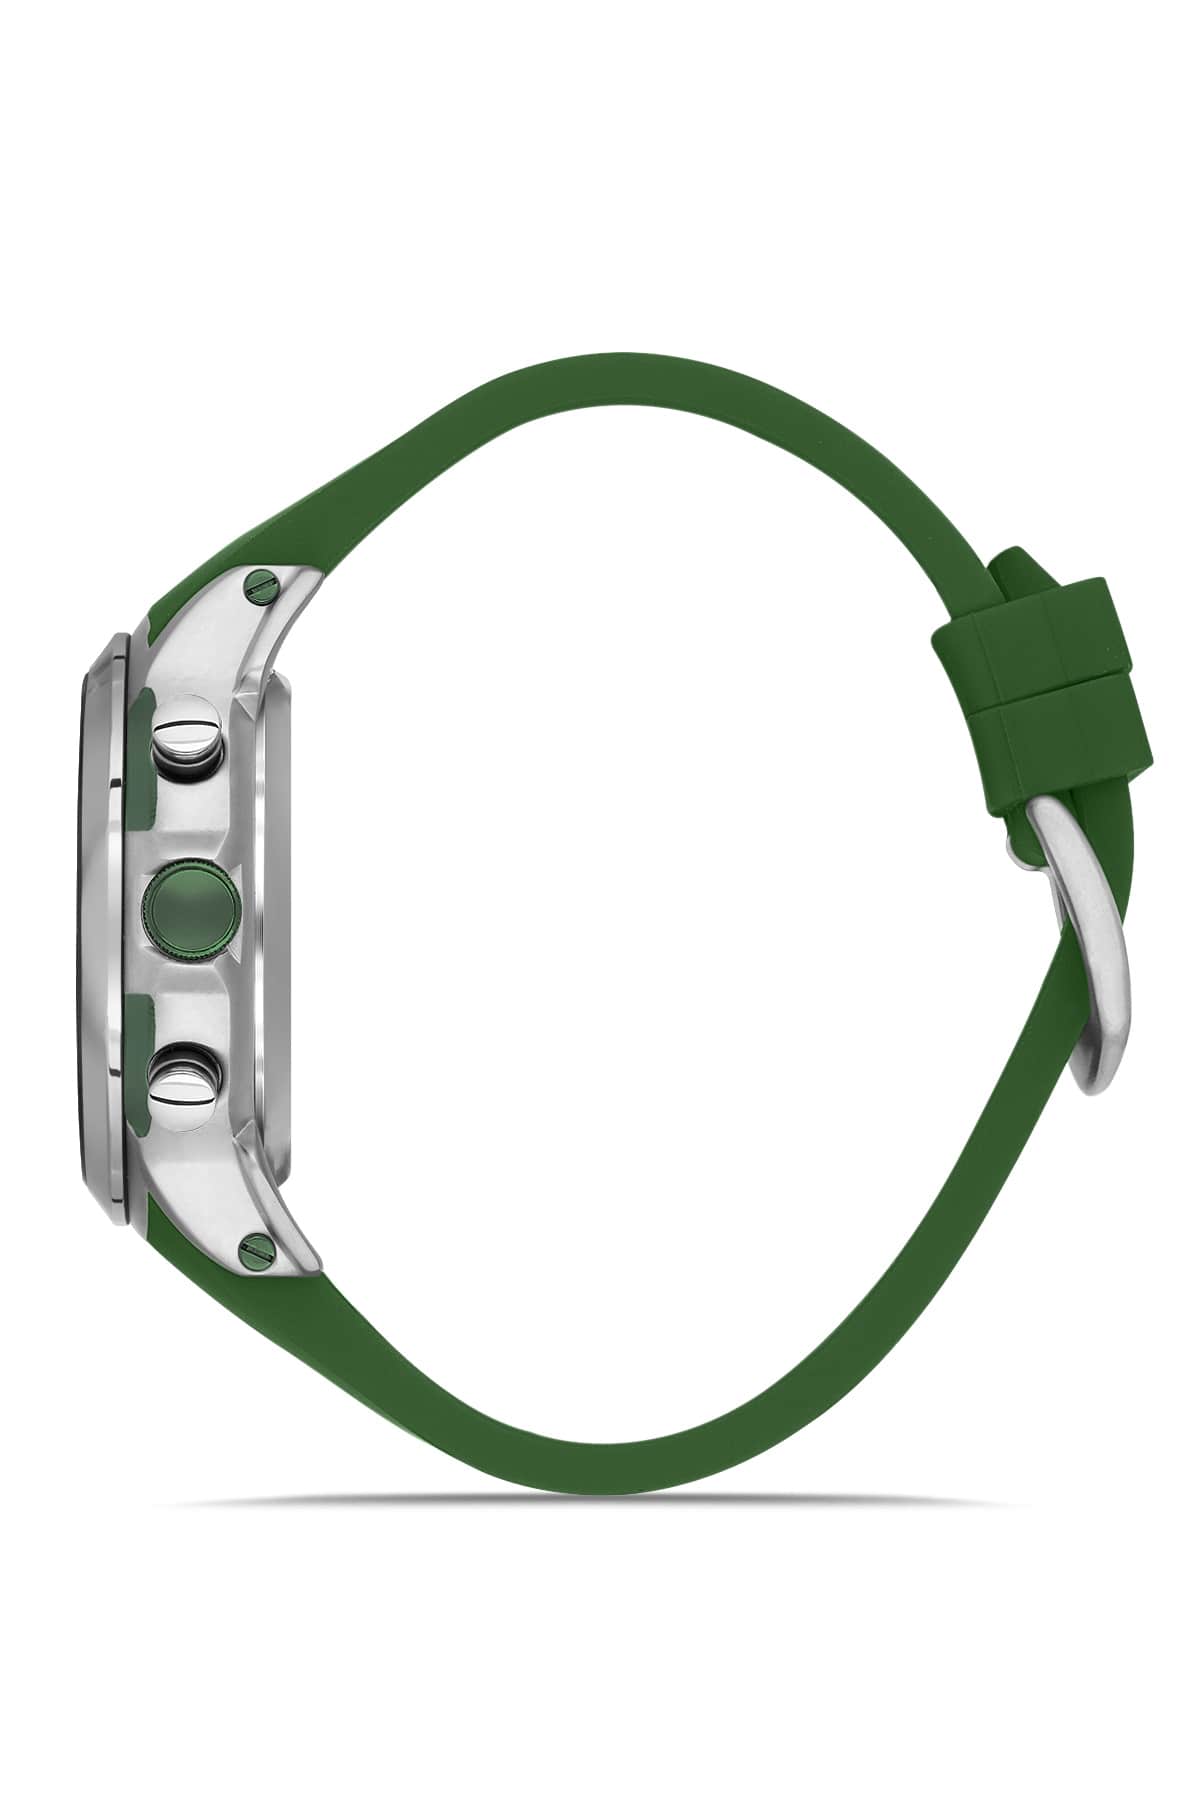 DAVID GUNER Yeşil Kadranlı Gümüş Kaplamalı Multifonksiyonlu Yeşil Silikon Kordonlu Erkek Kol Saati